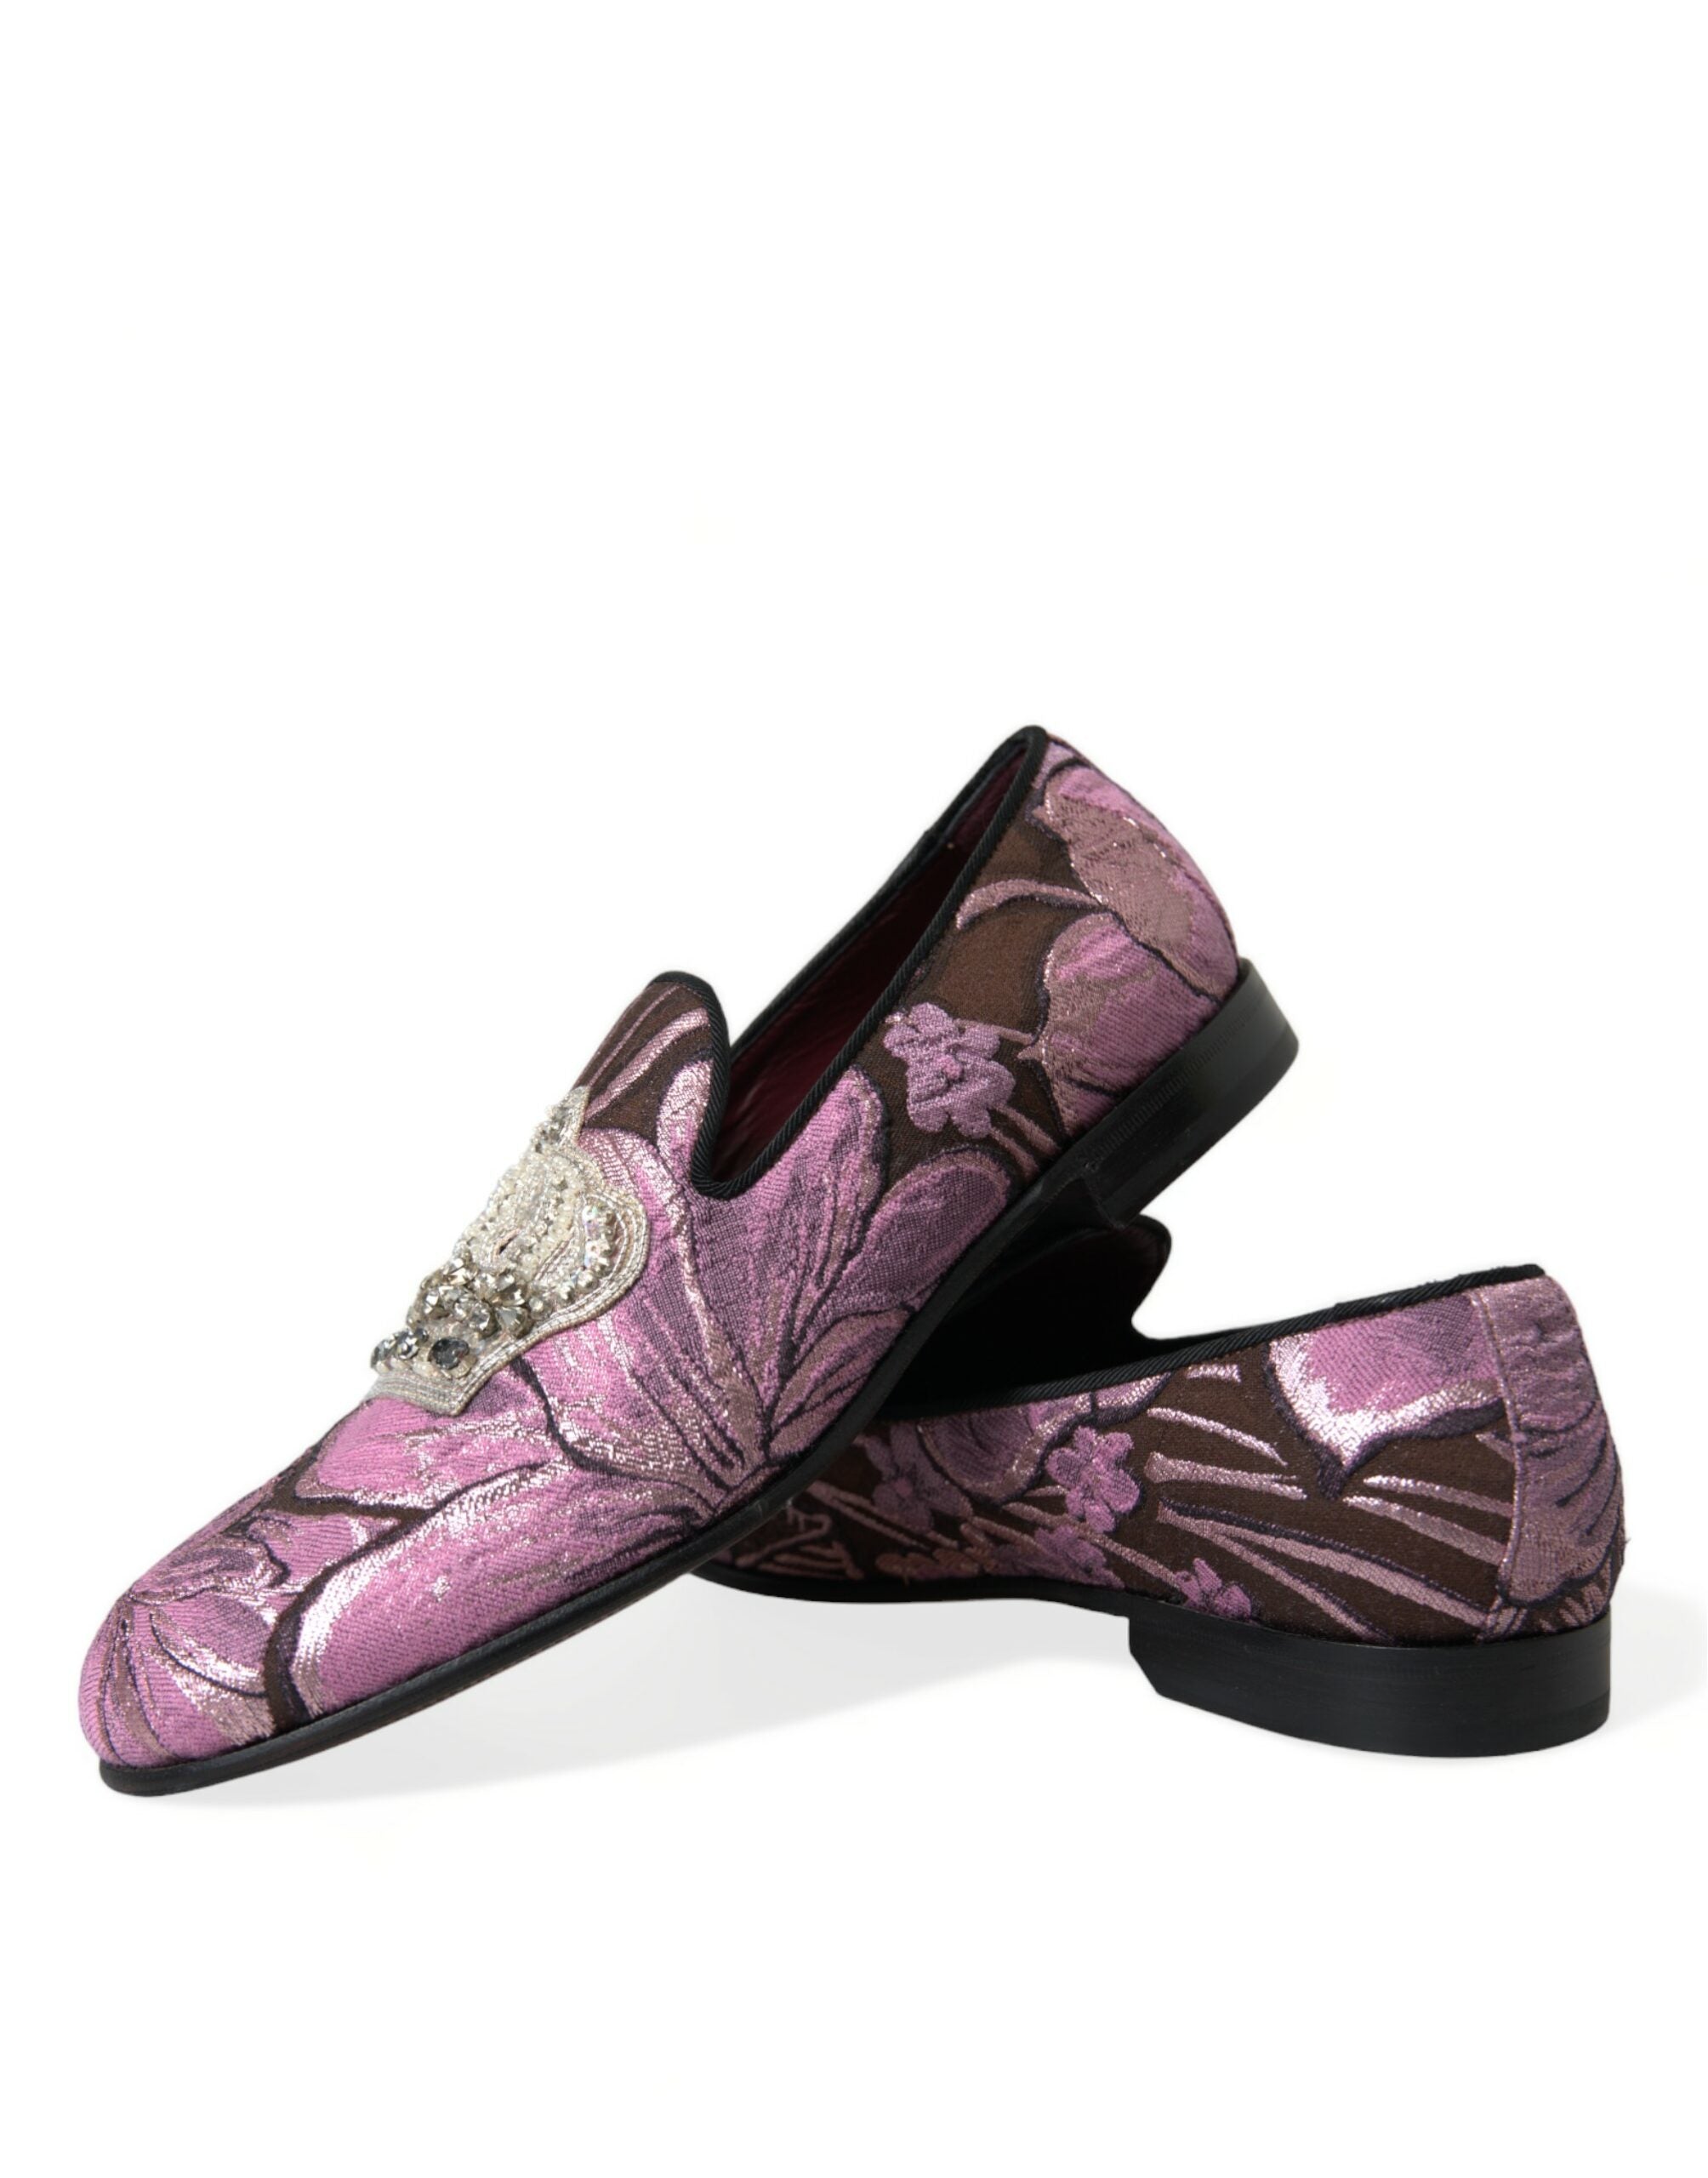 Dolce & Gabbana Elegant Pink Crystal-Embellished Loafers